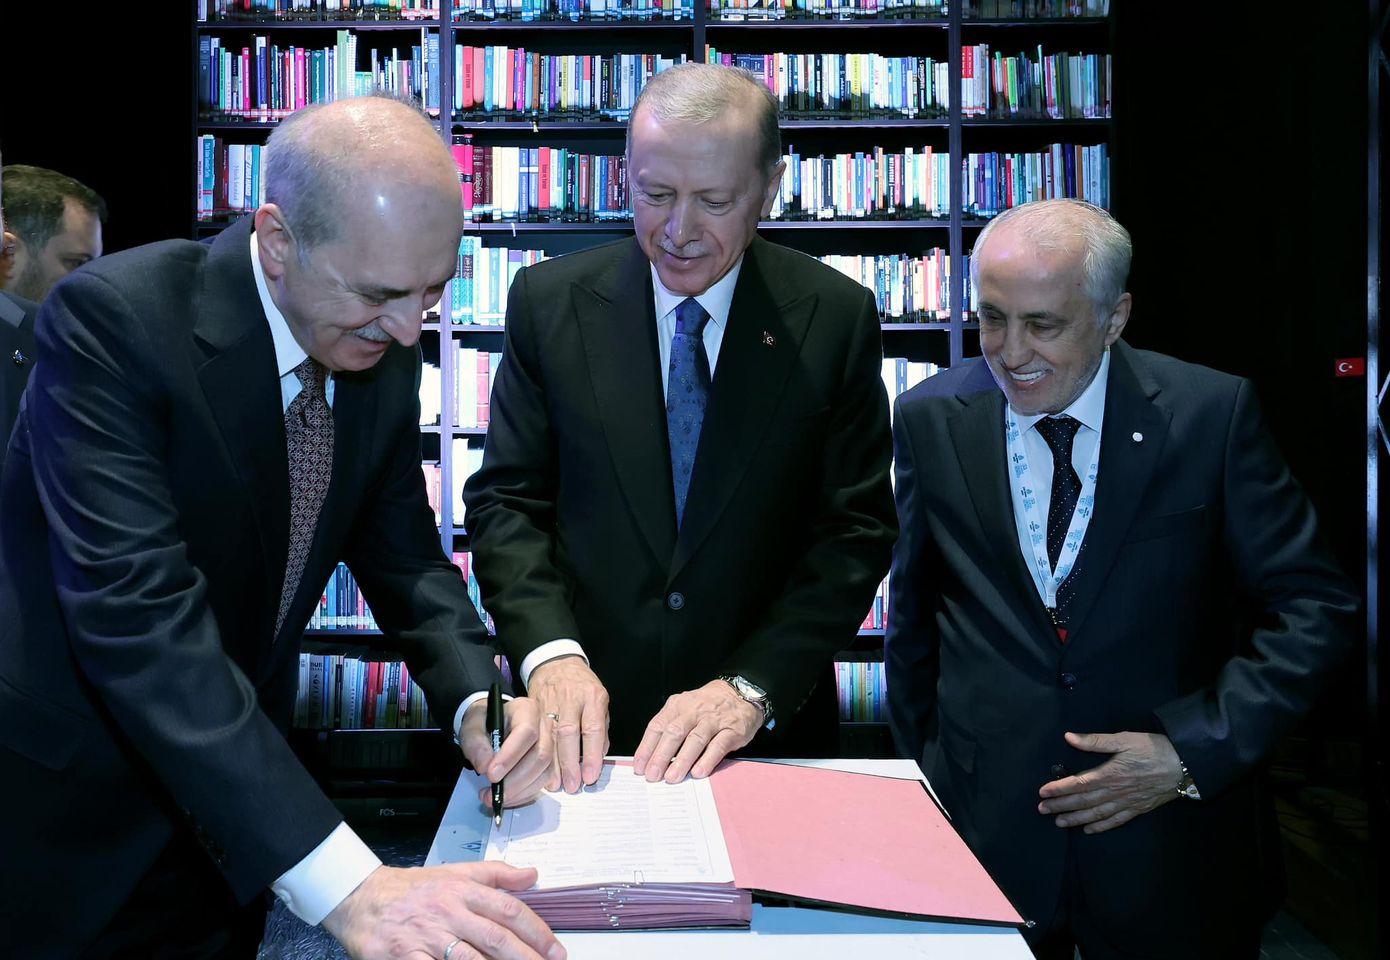 İlim Yayma Vakfı'nın 53. Olağan Genel Kurulu TBMM Başkanı Numan Kurtulmuş ve Cumhurbaşkanı Erdoğan'ın katılımıyla gerçekleşti.